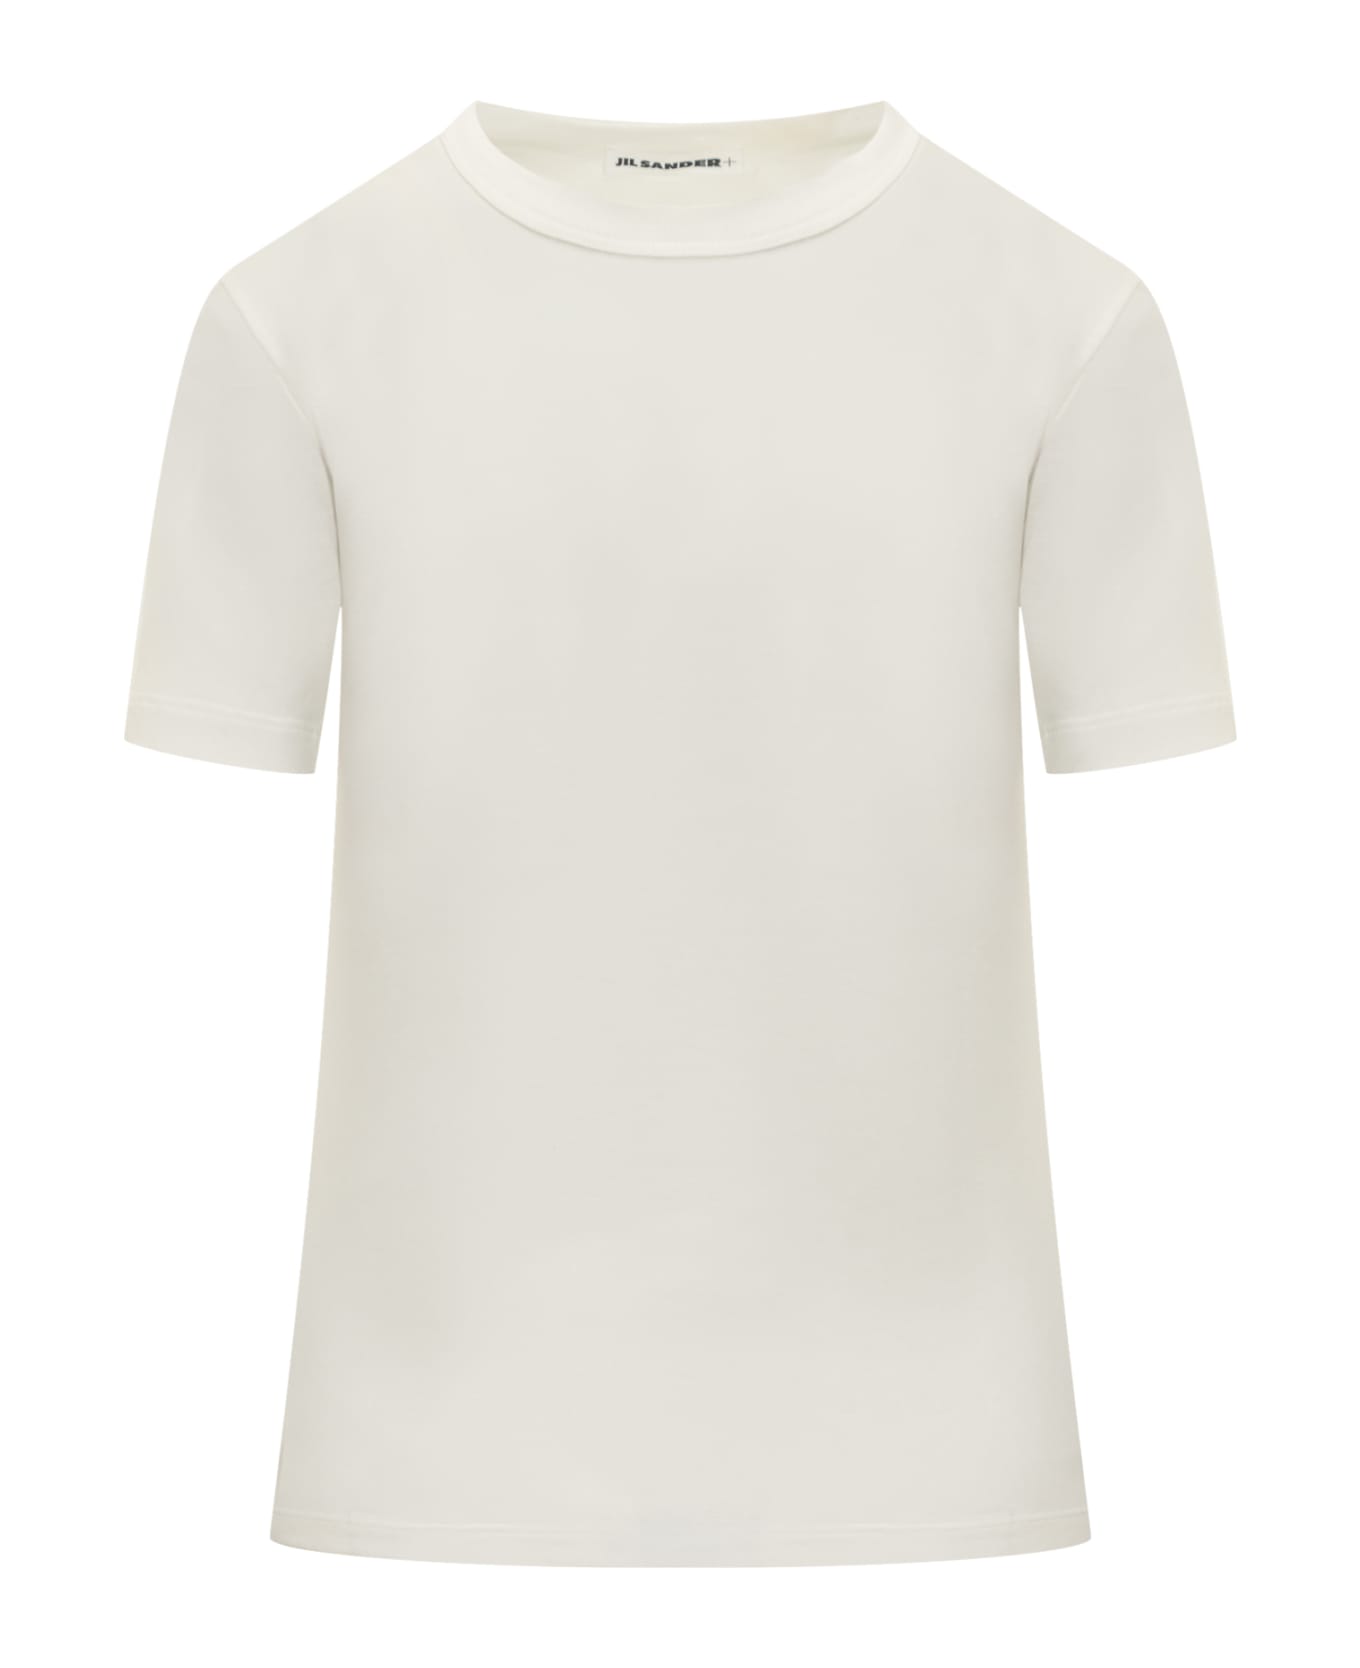 Jil Sander T-shirt - WHITE